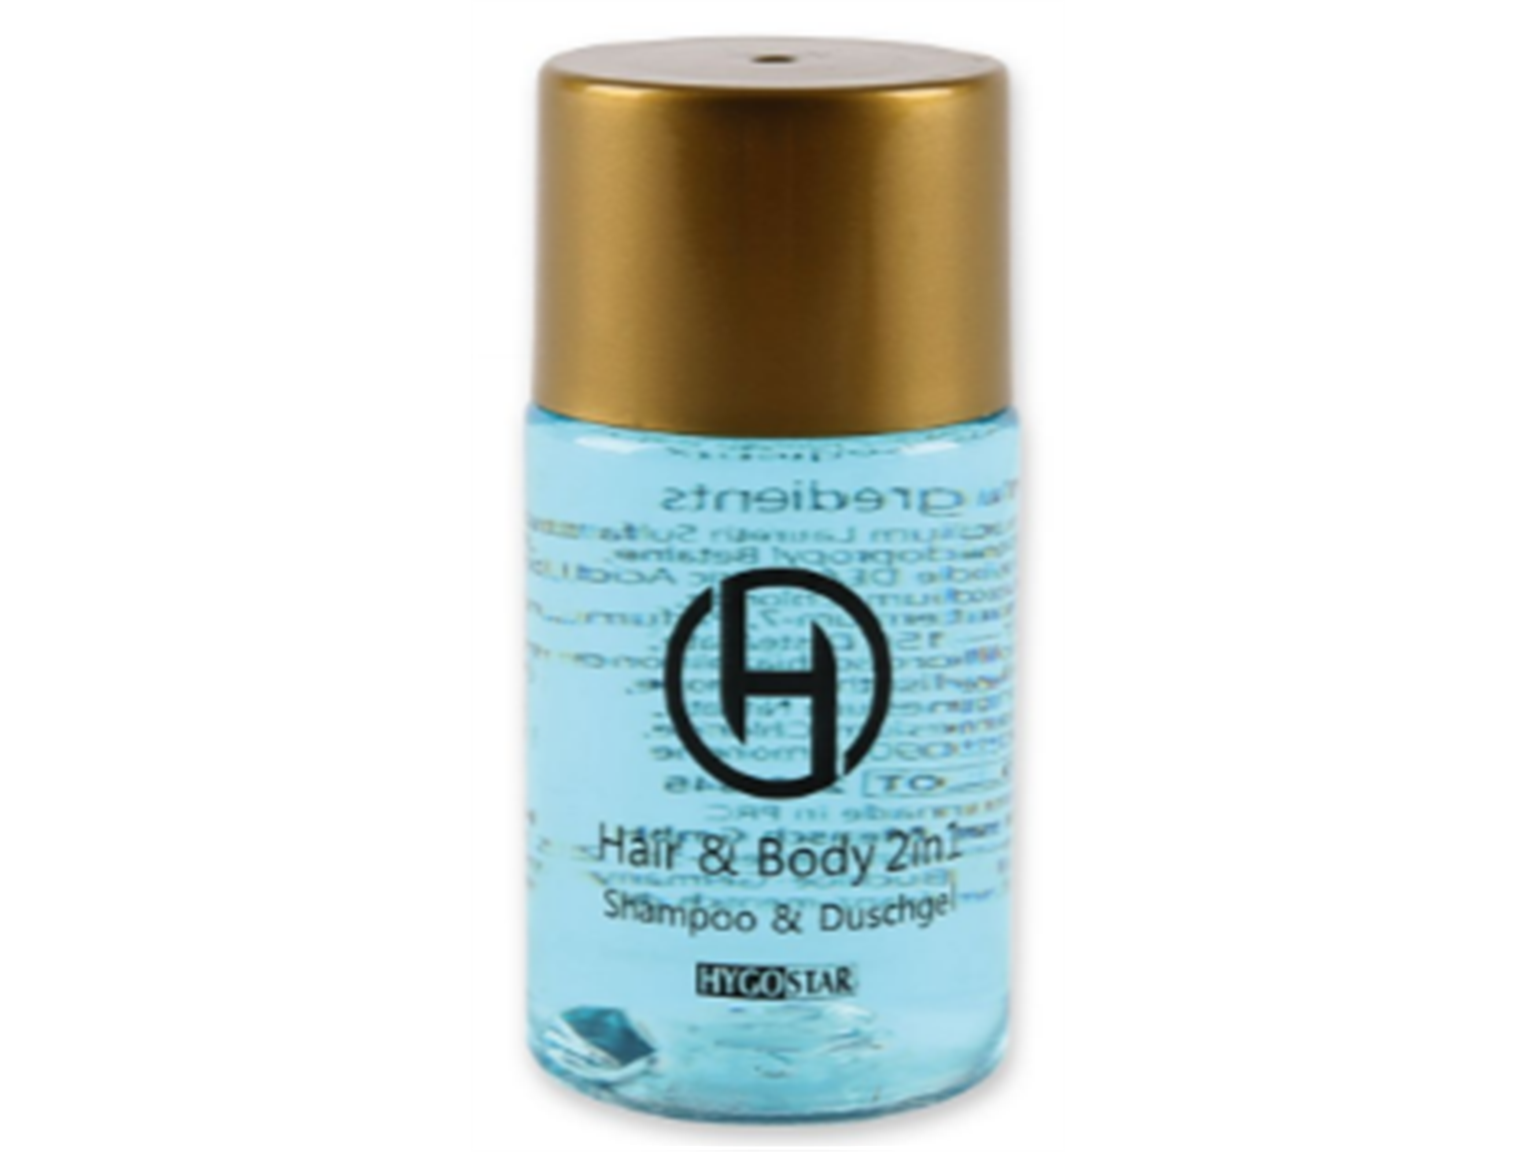 HAIR & BODY HYGOSTAR  2in1, Flasche 25 ml, blau